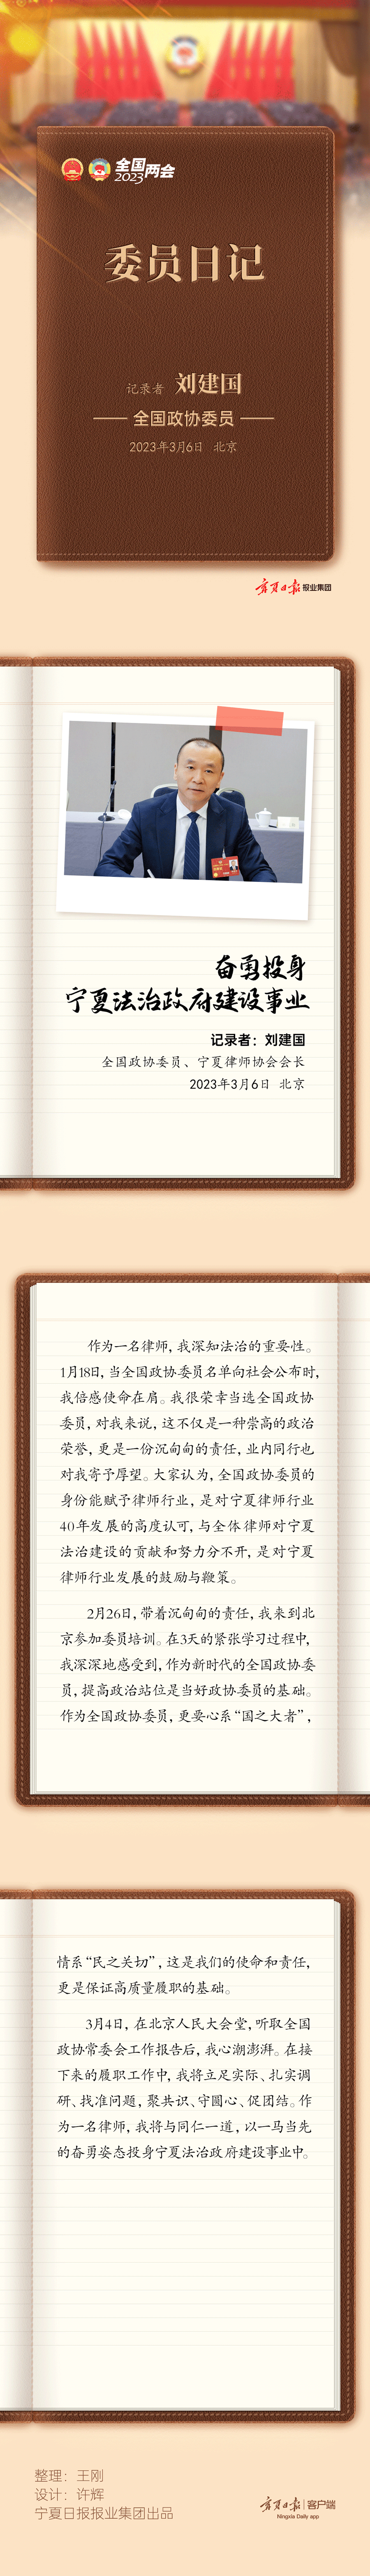 日记内容-刘建国-静态.png